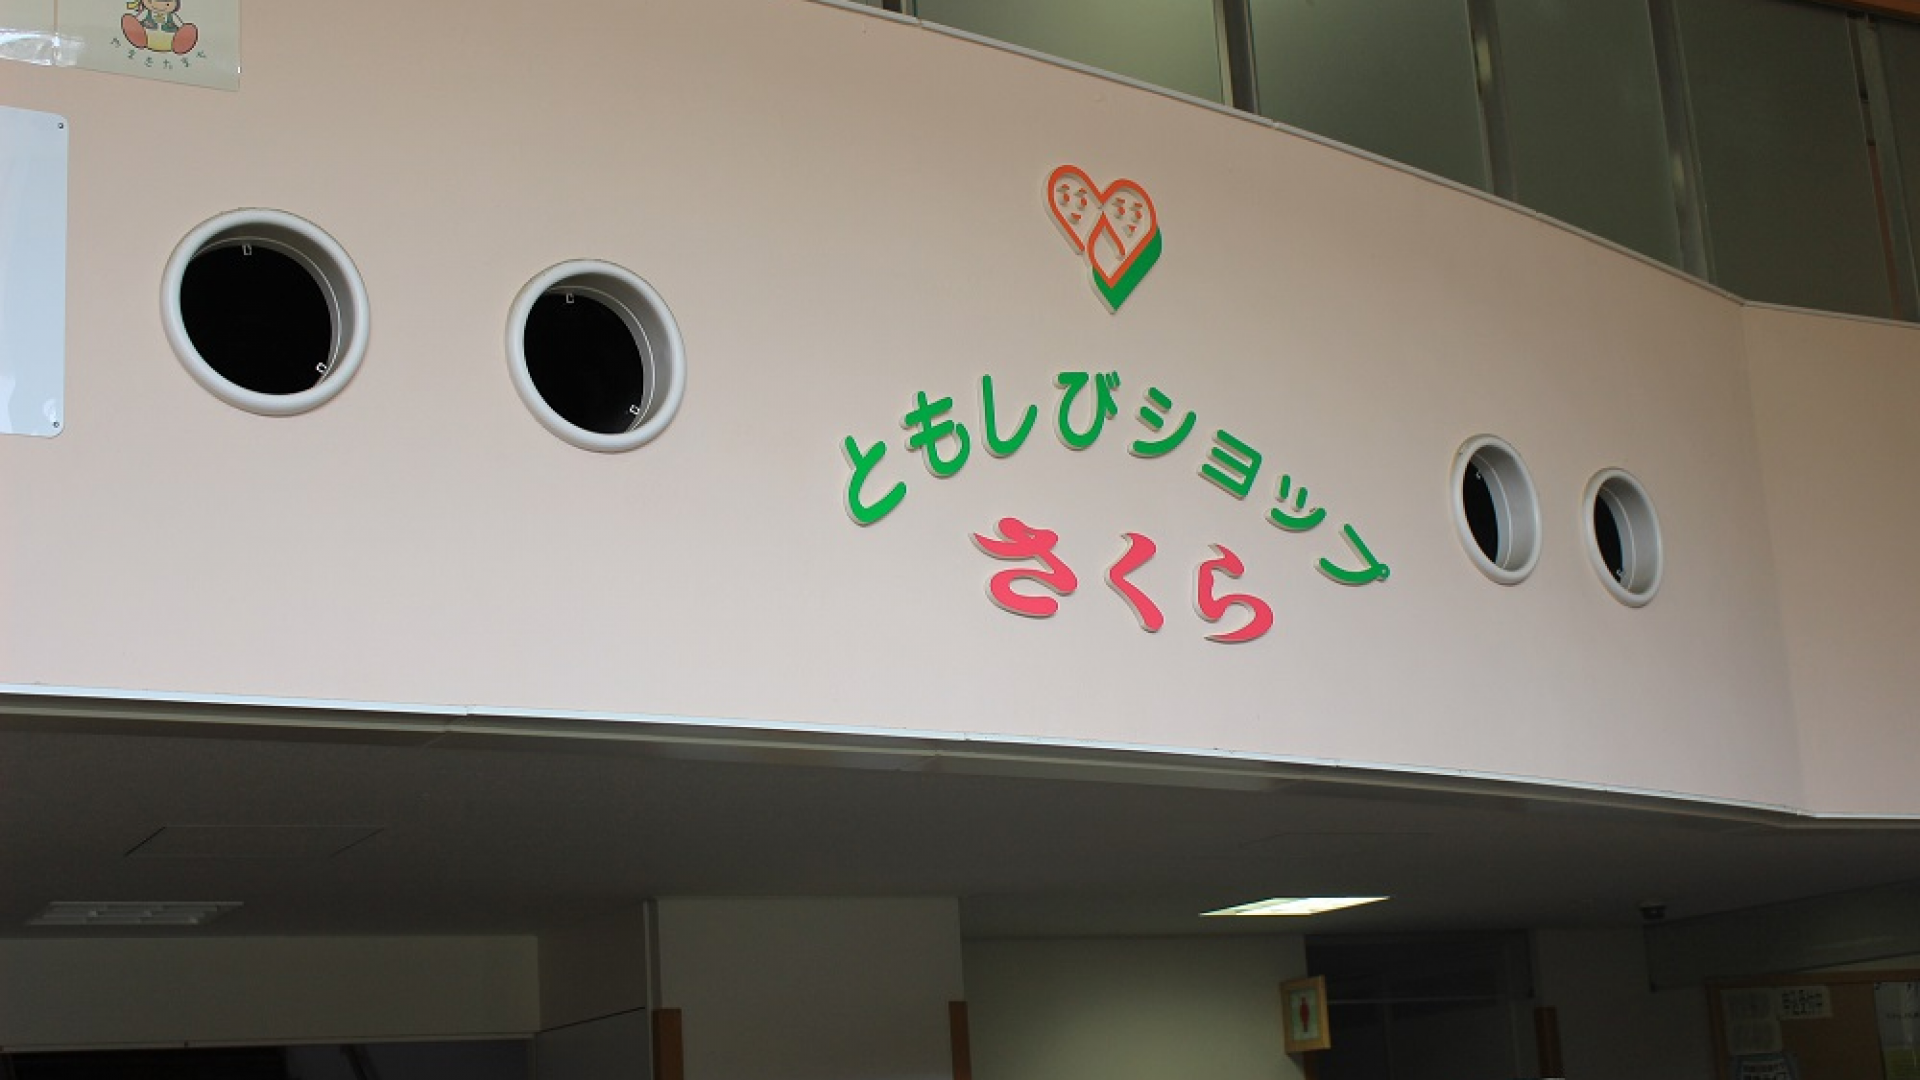 ศูนย์สุขภาพและสวัสดิการ ยะมะคิตะ-โชะ  ร้านซากุระ โทะโมะชิบิ   